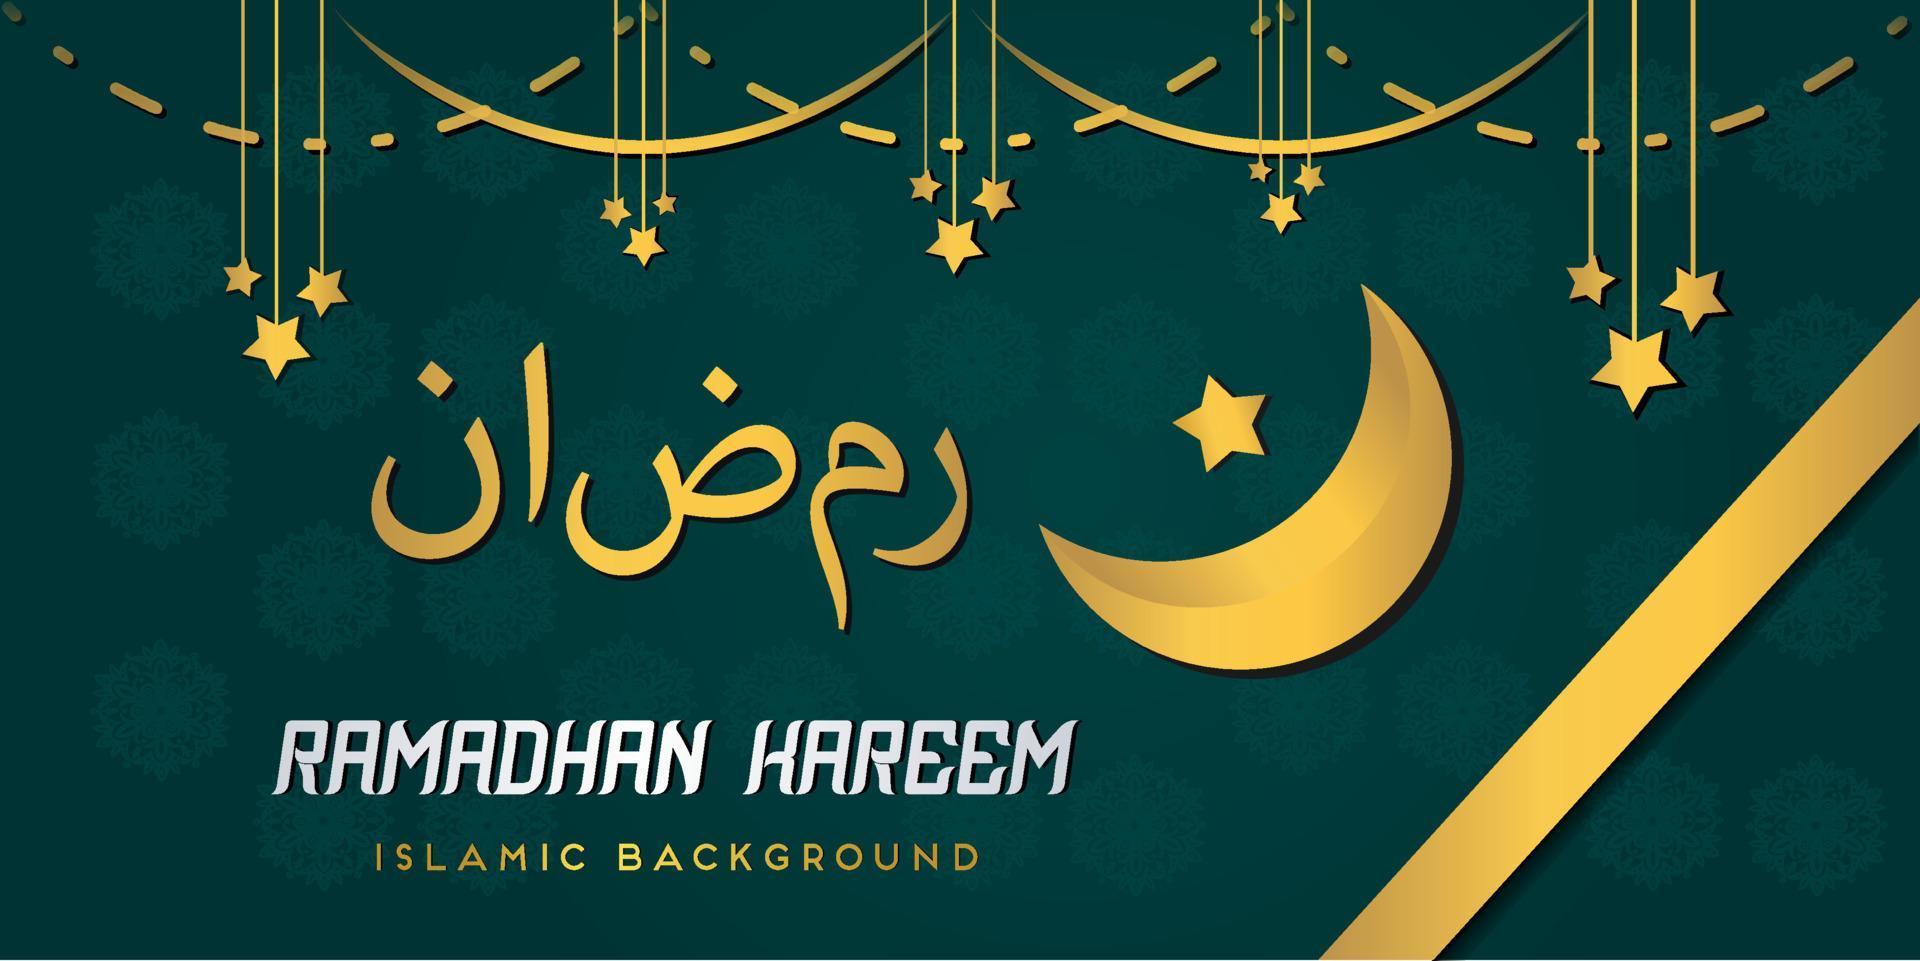 ramadan kareem hebben web header banner met gouden luxe exclusieve glanzende frame arabische lantaarns gouden halve maan vector